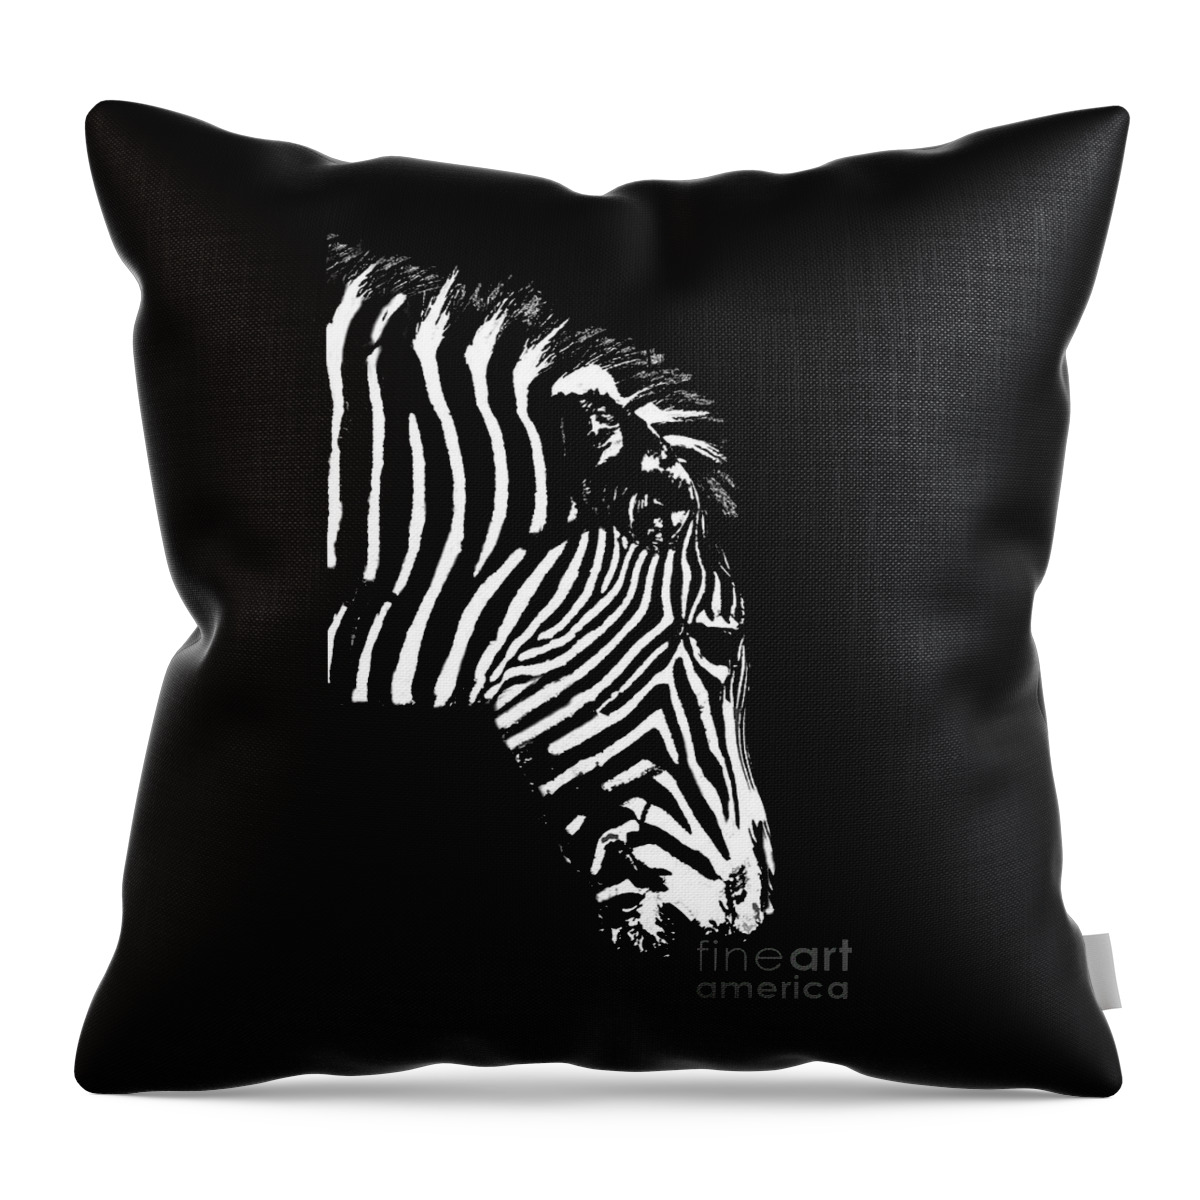 Zebra Throw Pillow featuring the photograph Ze Bra by Sheila Laurens